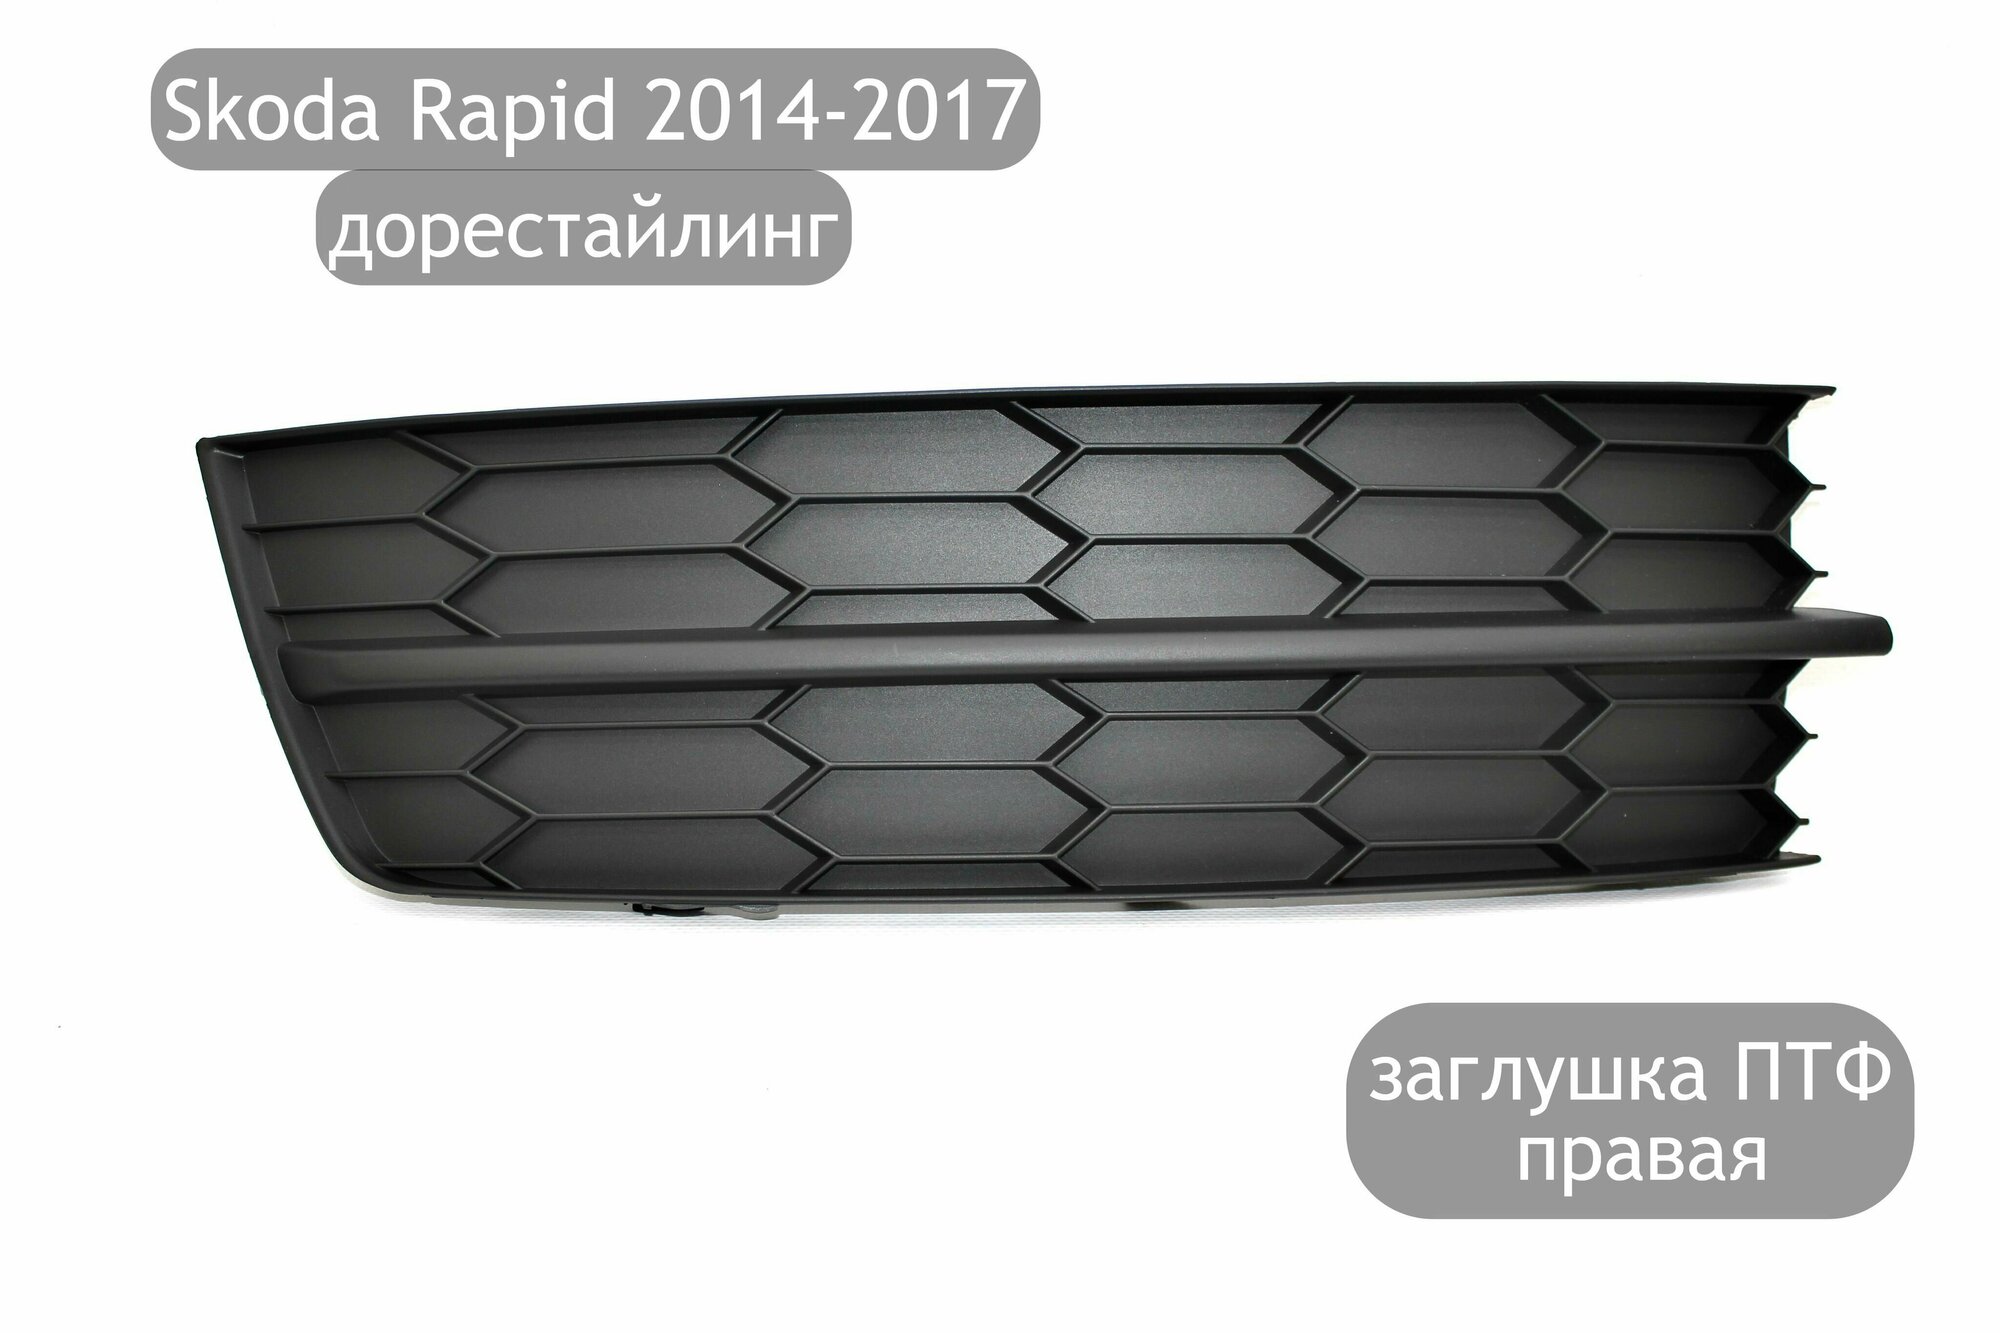 Заглушка противотуманной фары правая для Skoda Rapid 2014-2017 (дорестайлинг)